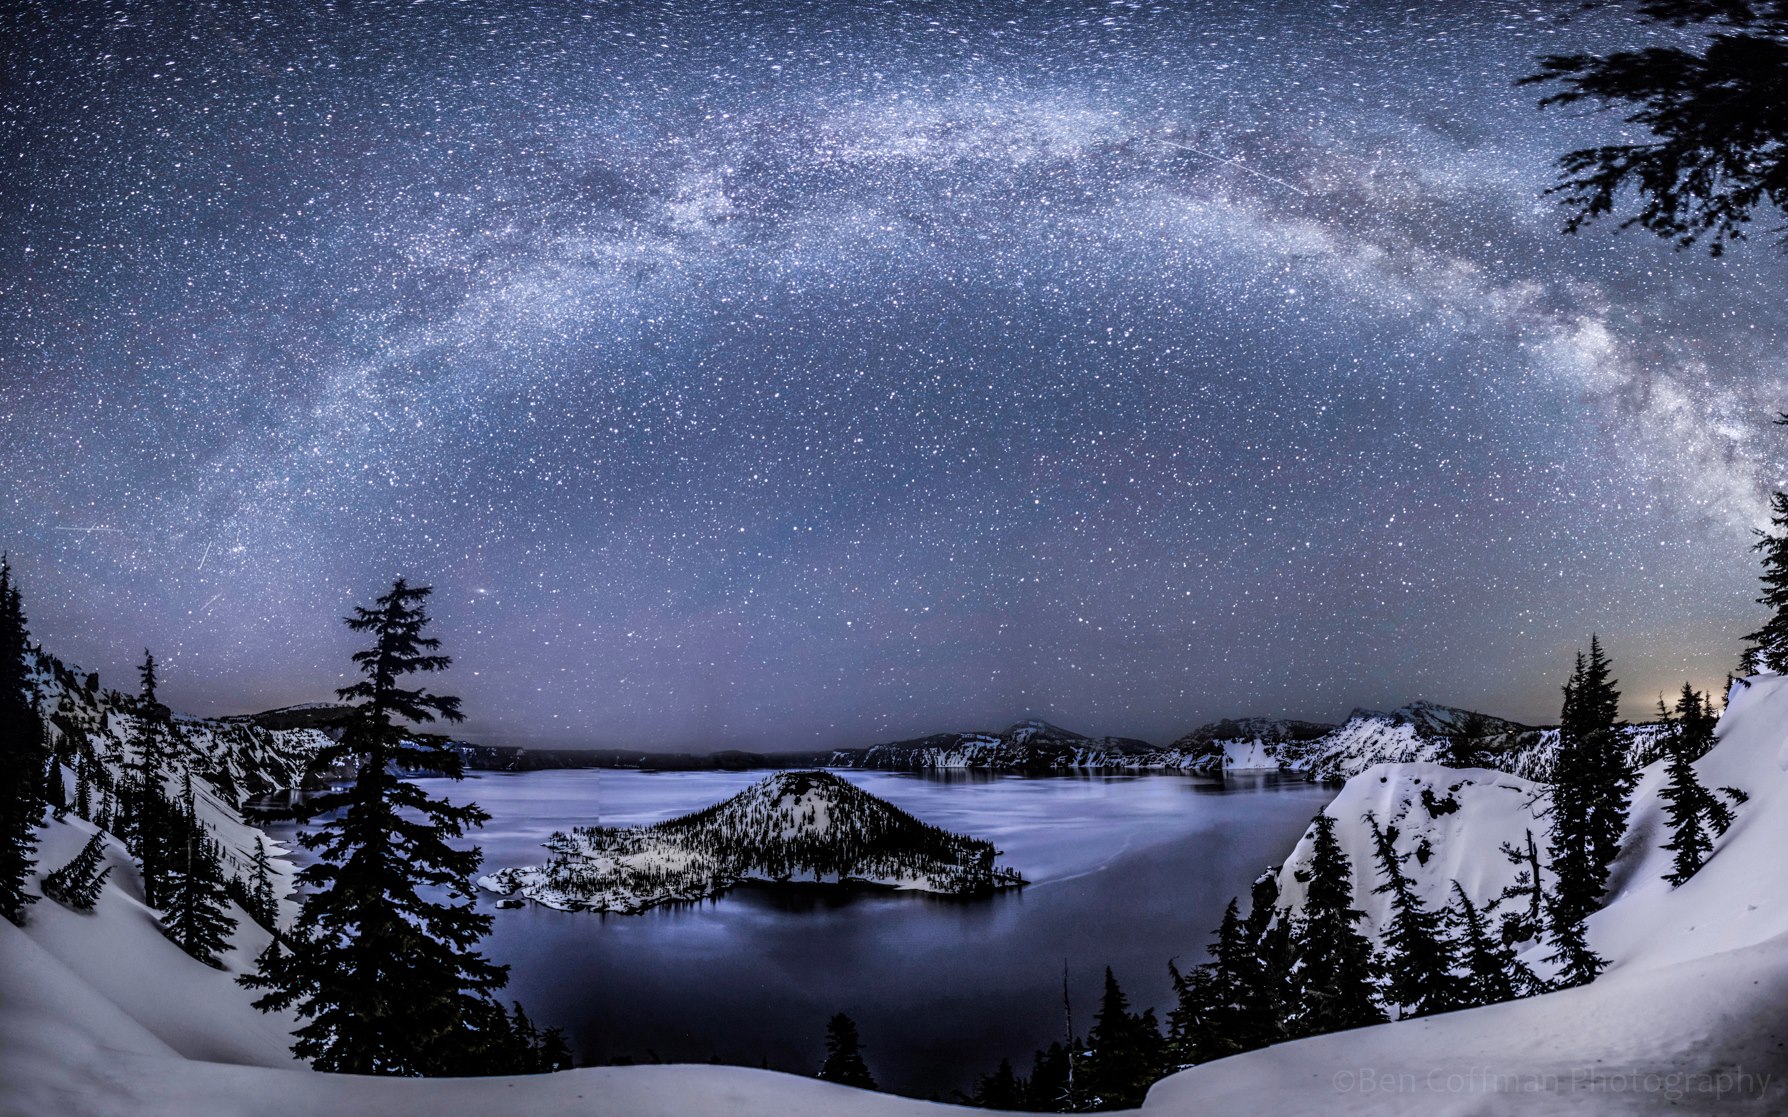 Звёздное небо и космос в картинках - Страница 28 Milky_Way_Crater_Lake_4-20-2013_Lyrids_Ben_Coffman_Photogrpahy